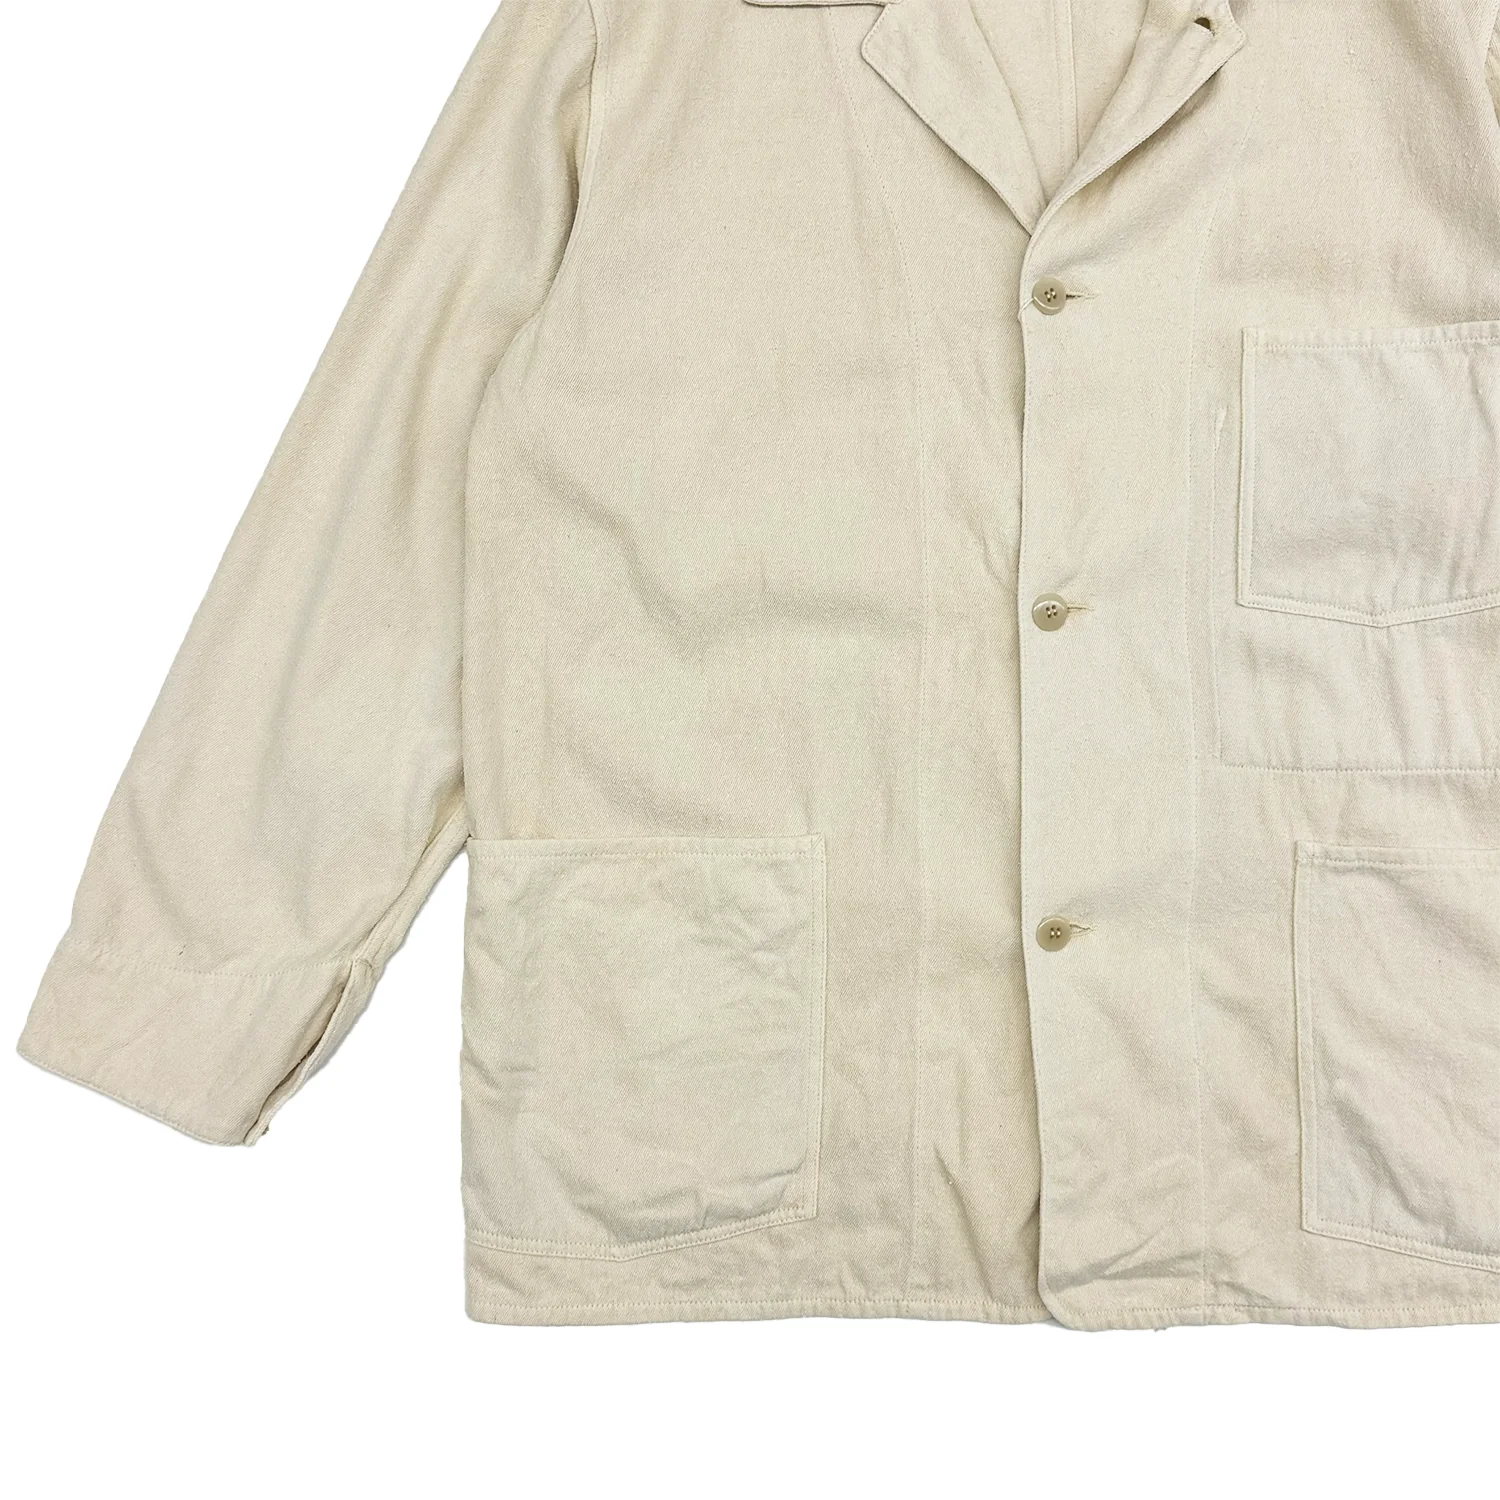 COMOLI / シルクネップ 1938ジャケット